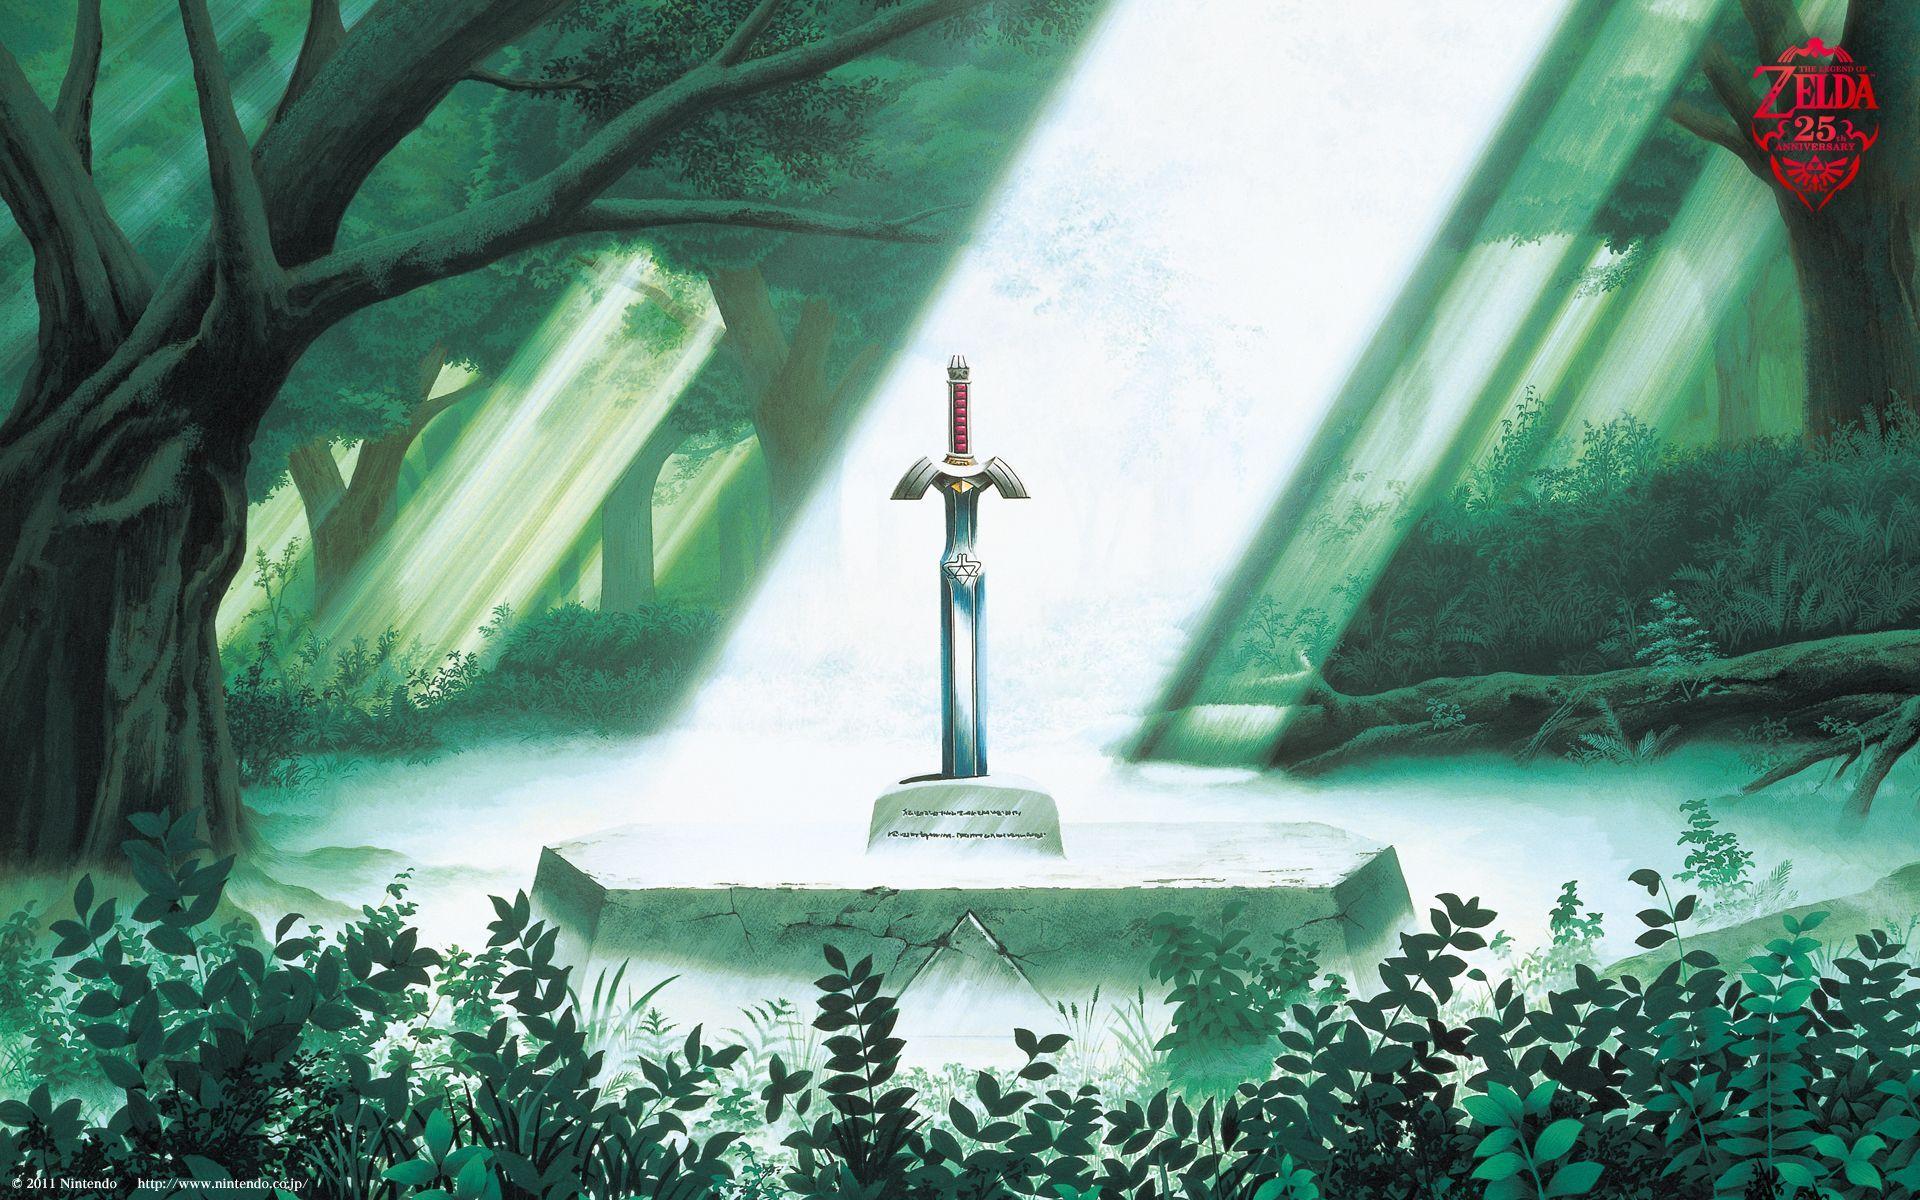 Legend Of Zelda Master Sword Wallpapers - Wallpaper Cave